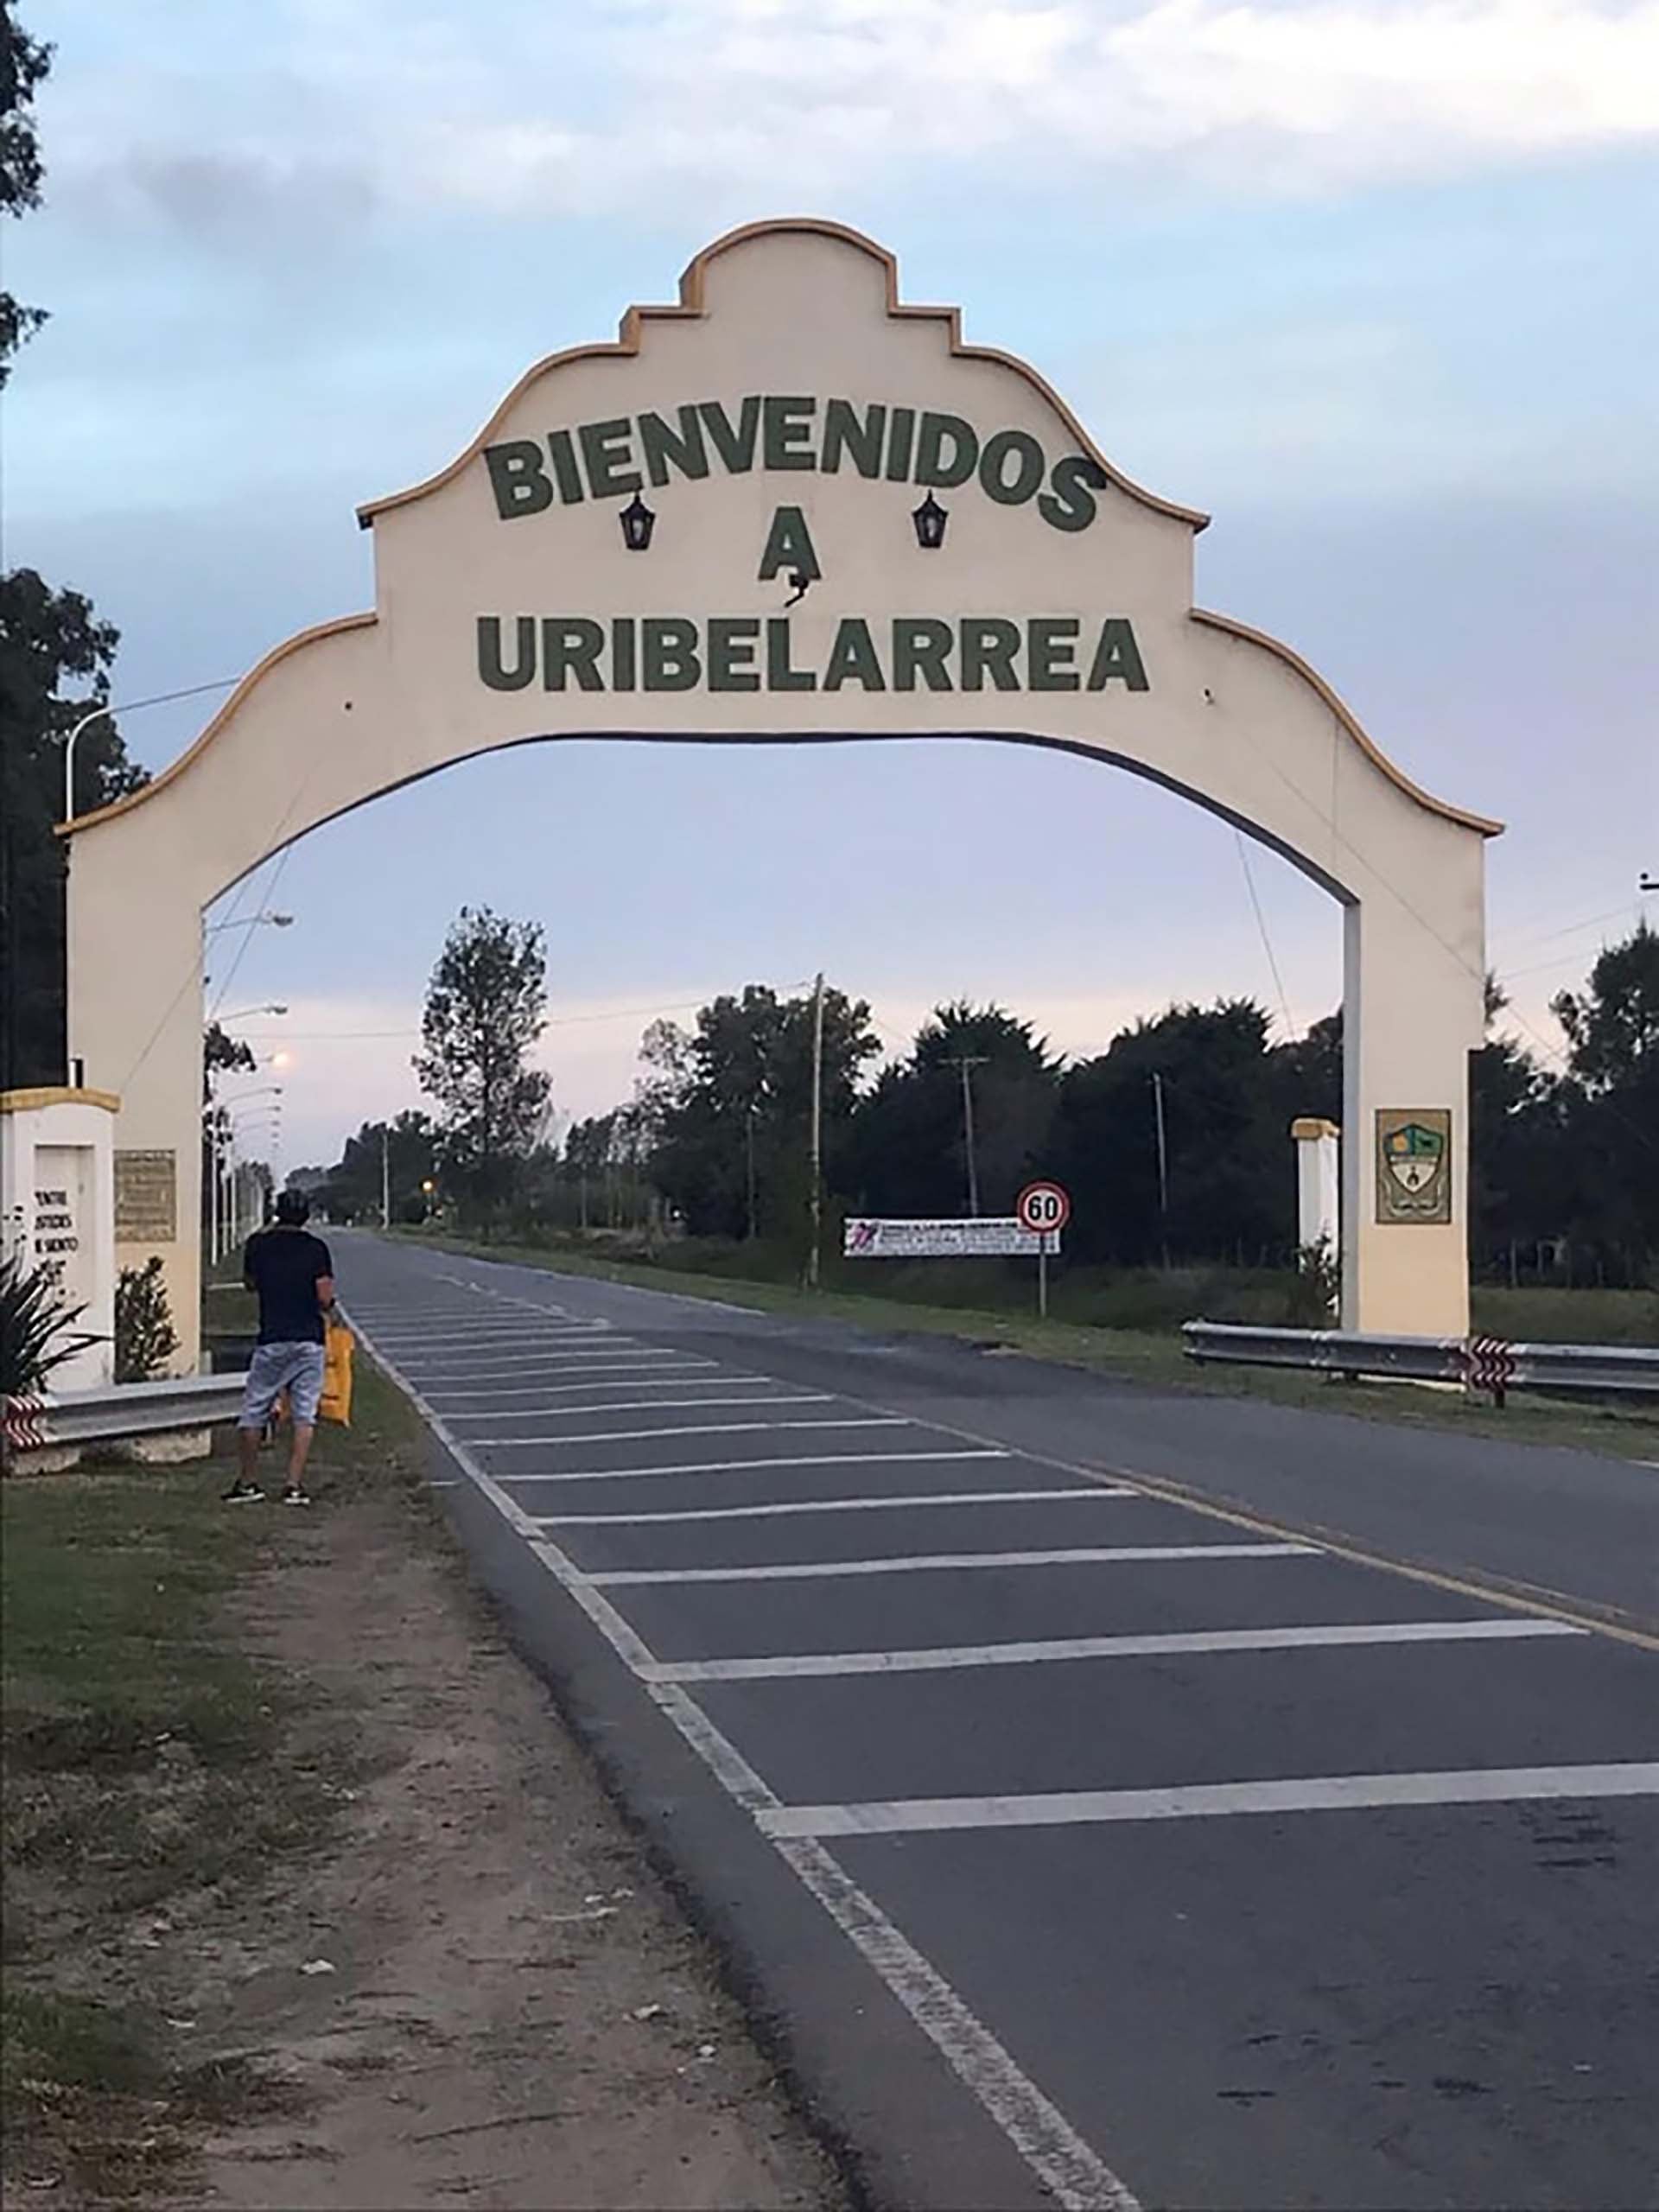  La historia y arquitectura de Uribelarrea, un tesoro de la provincia de Buenos Aires